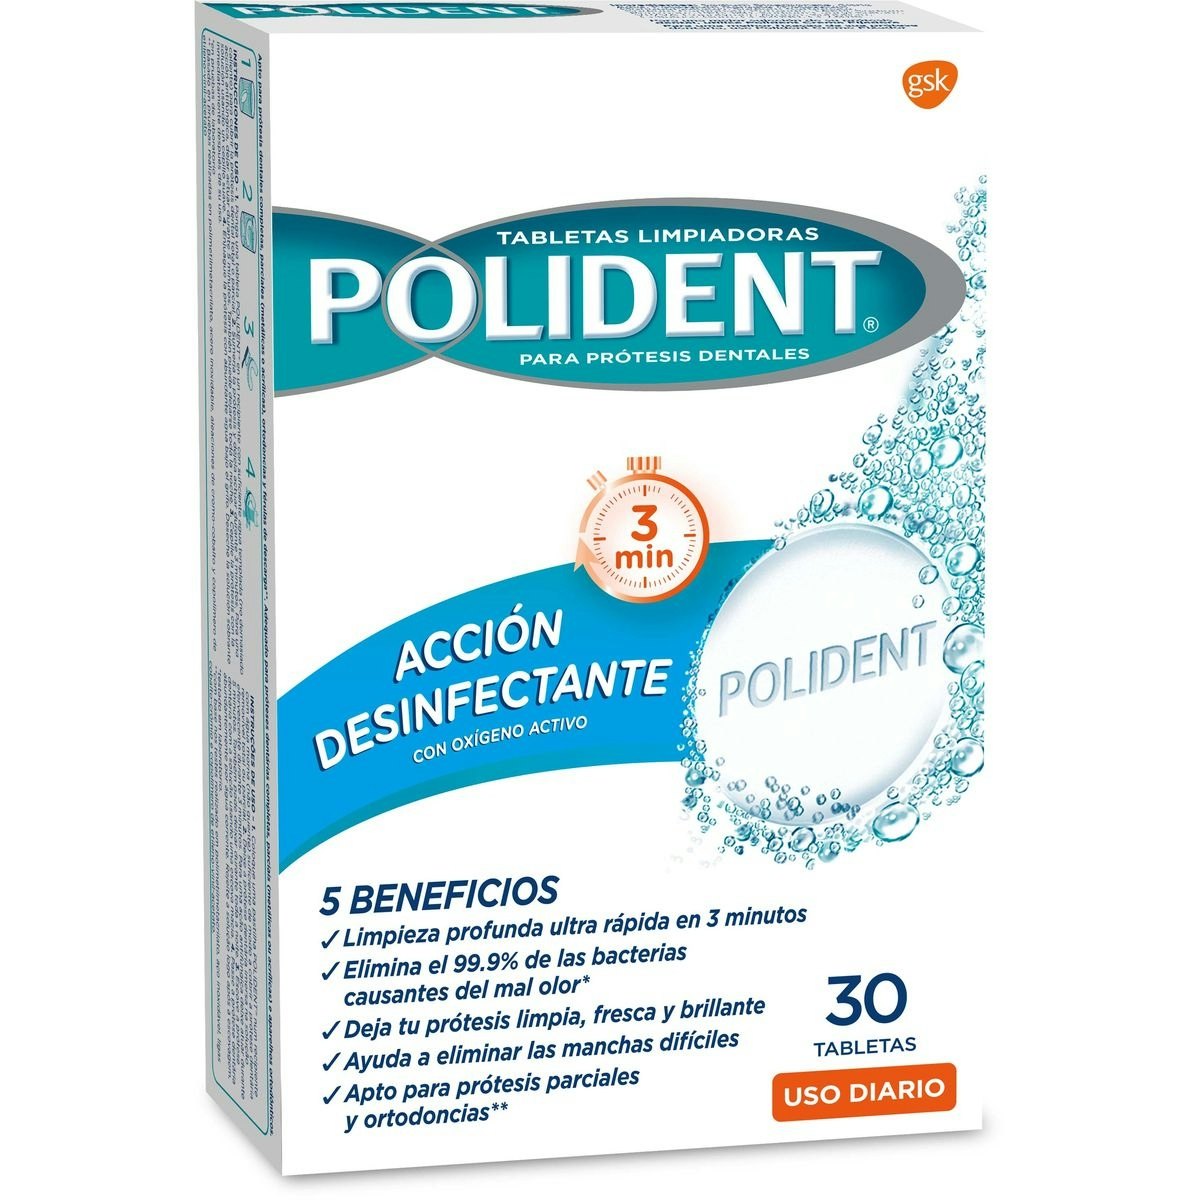 Tabletas limpiadoras POLIDENT para prótesis dental caja 30 uds